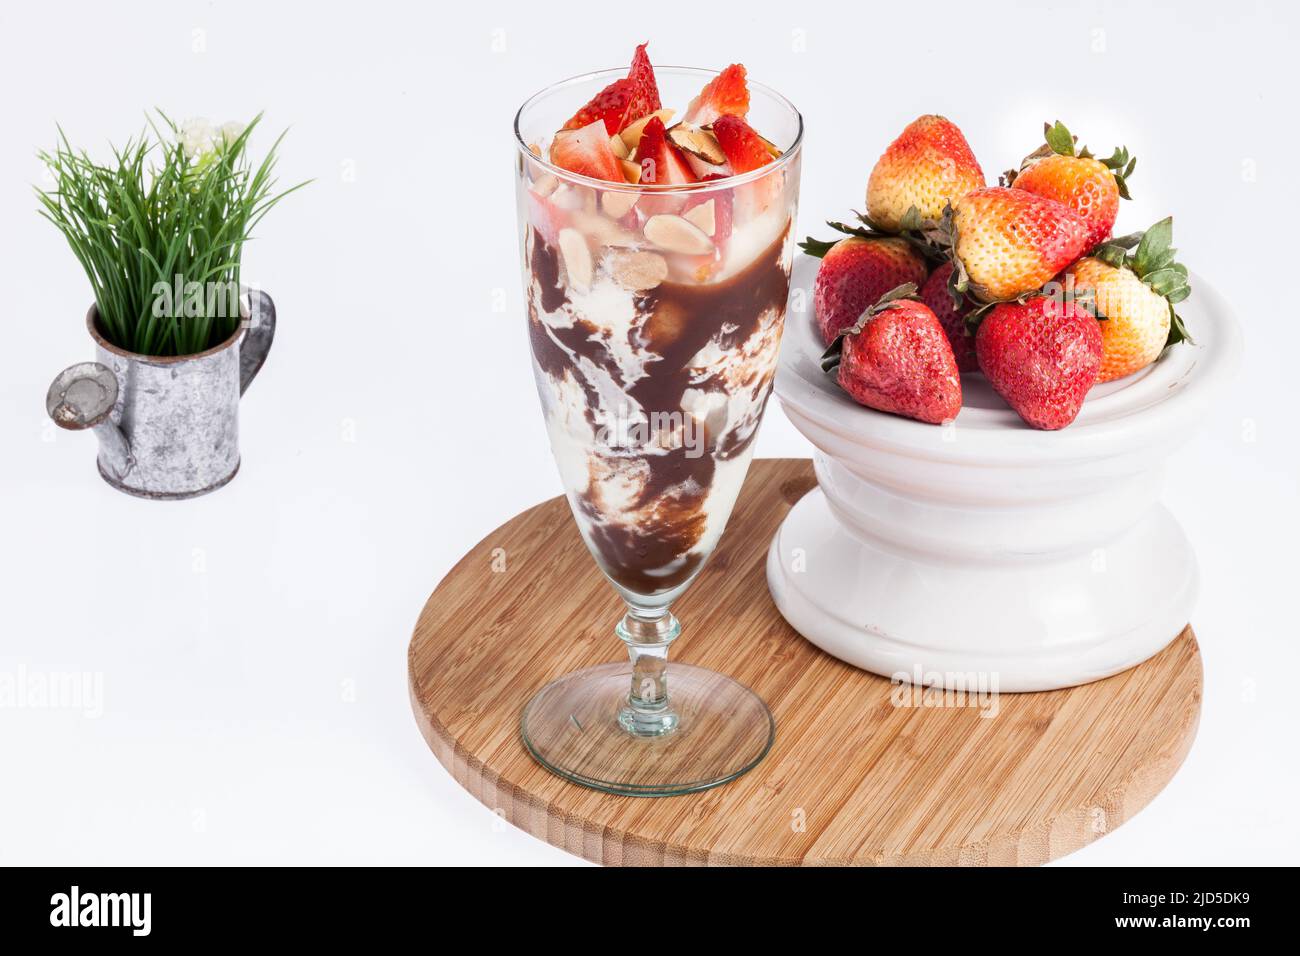 Tasty strawberry and chocolate milkshake. Stock Photo